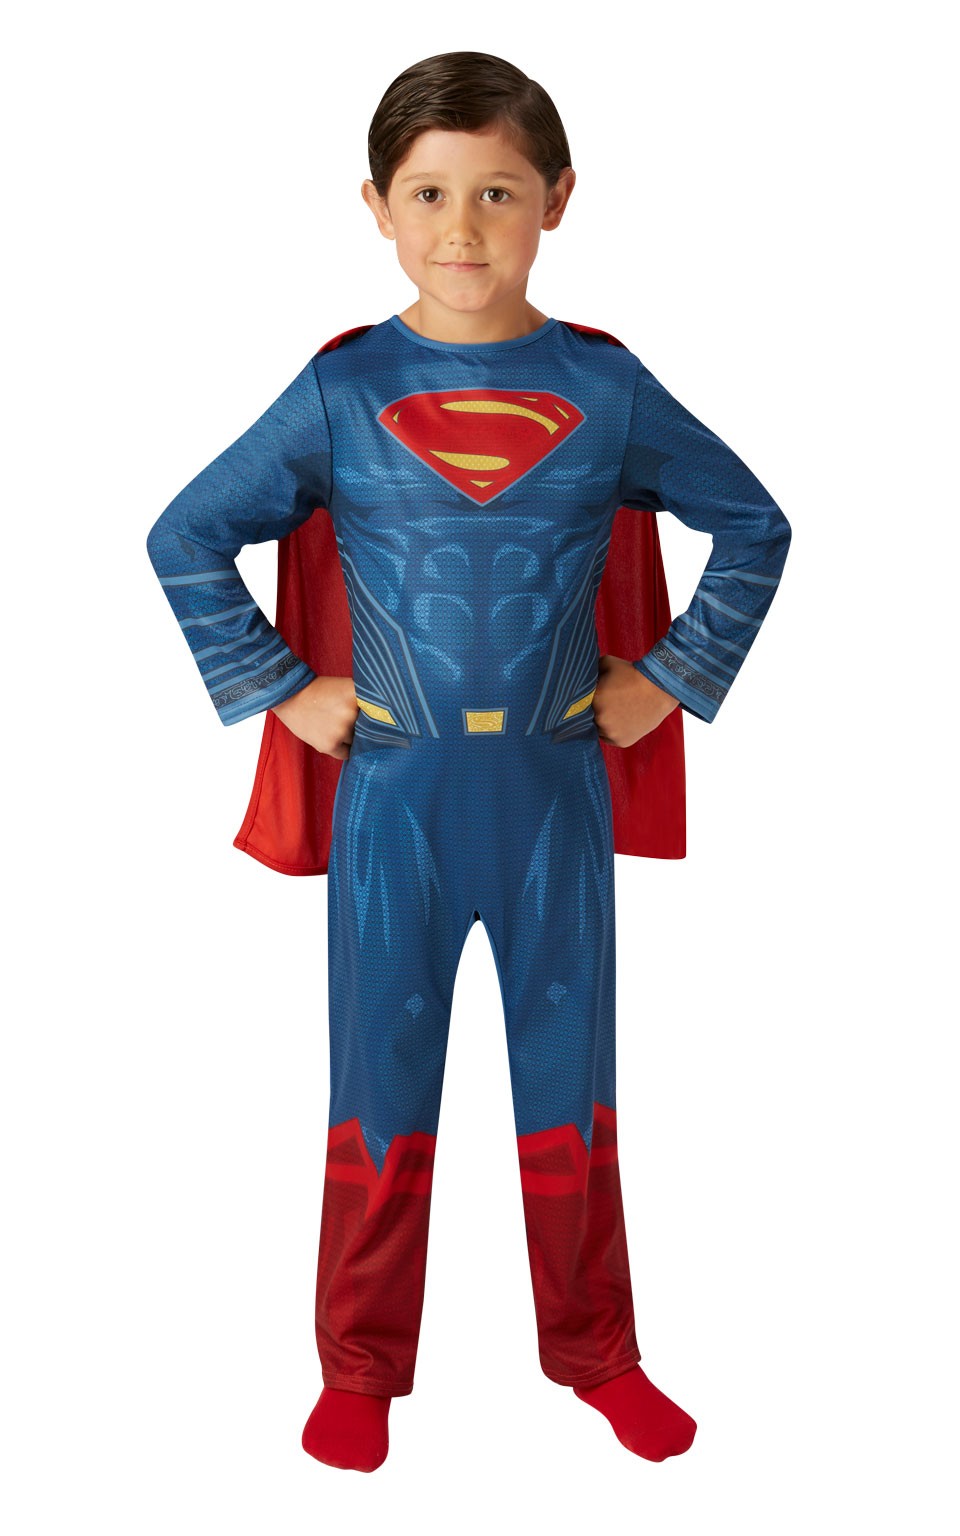 Het strand beroemd Aardappelen Superman pak kind bestellen ? | Jokershop Superhelden kleding